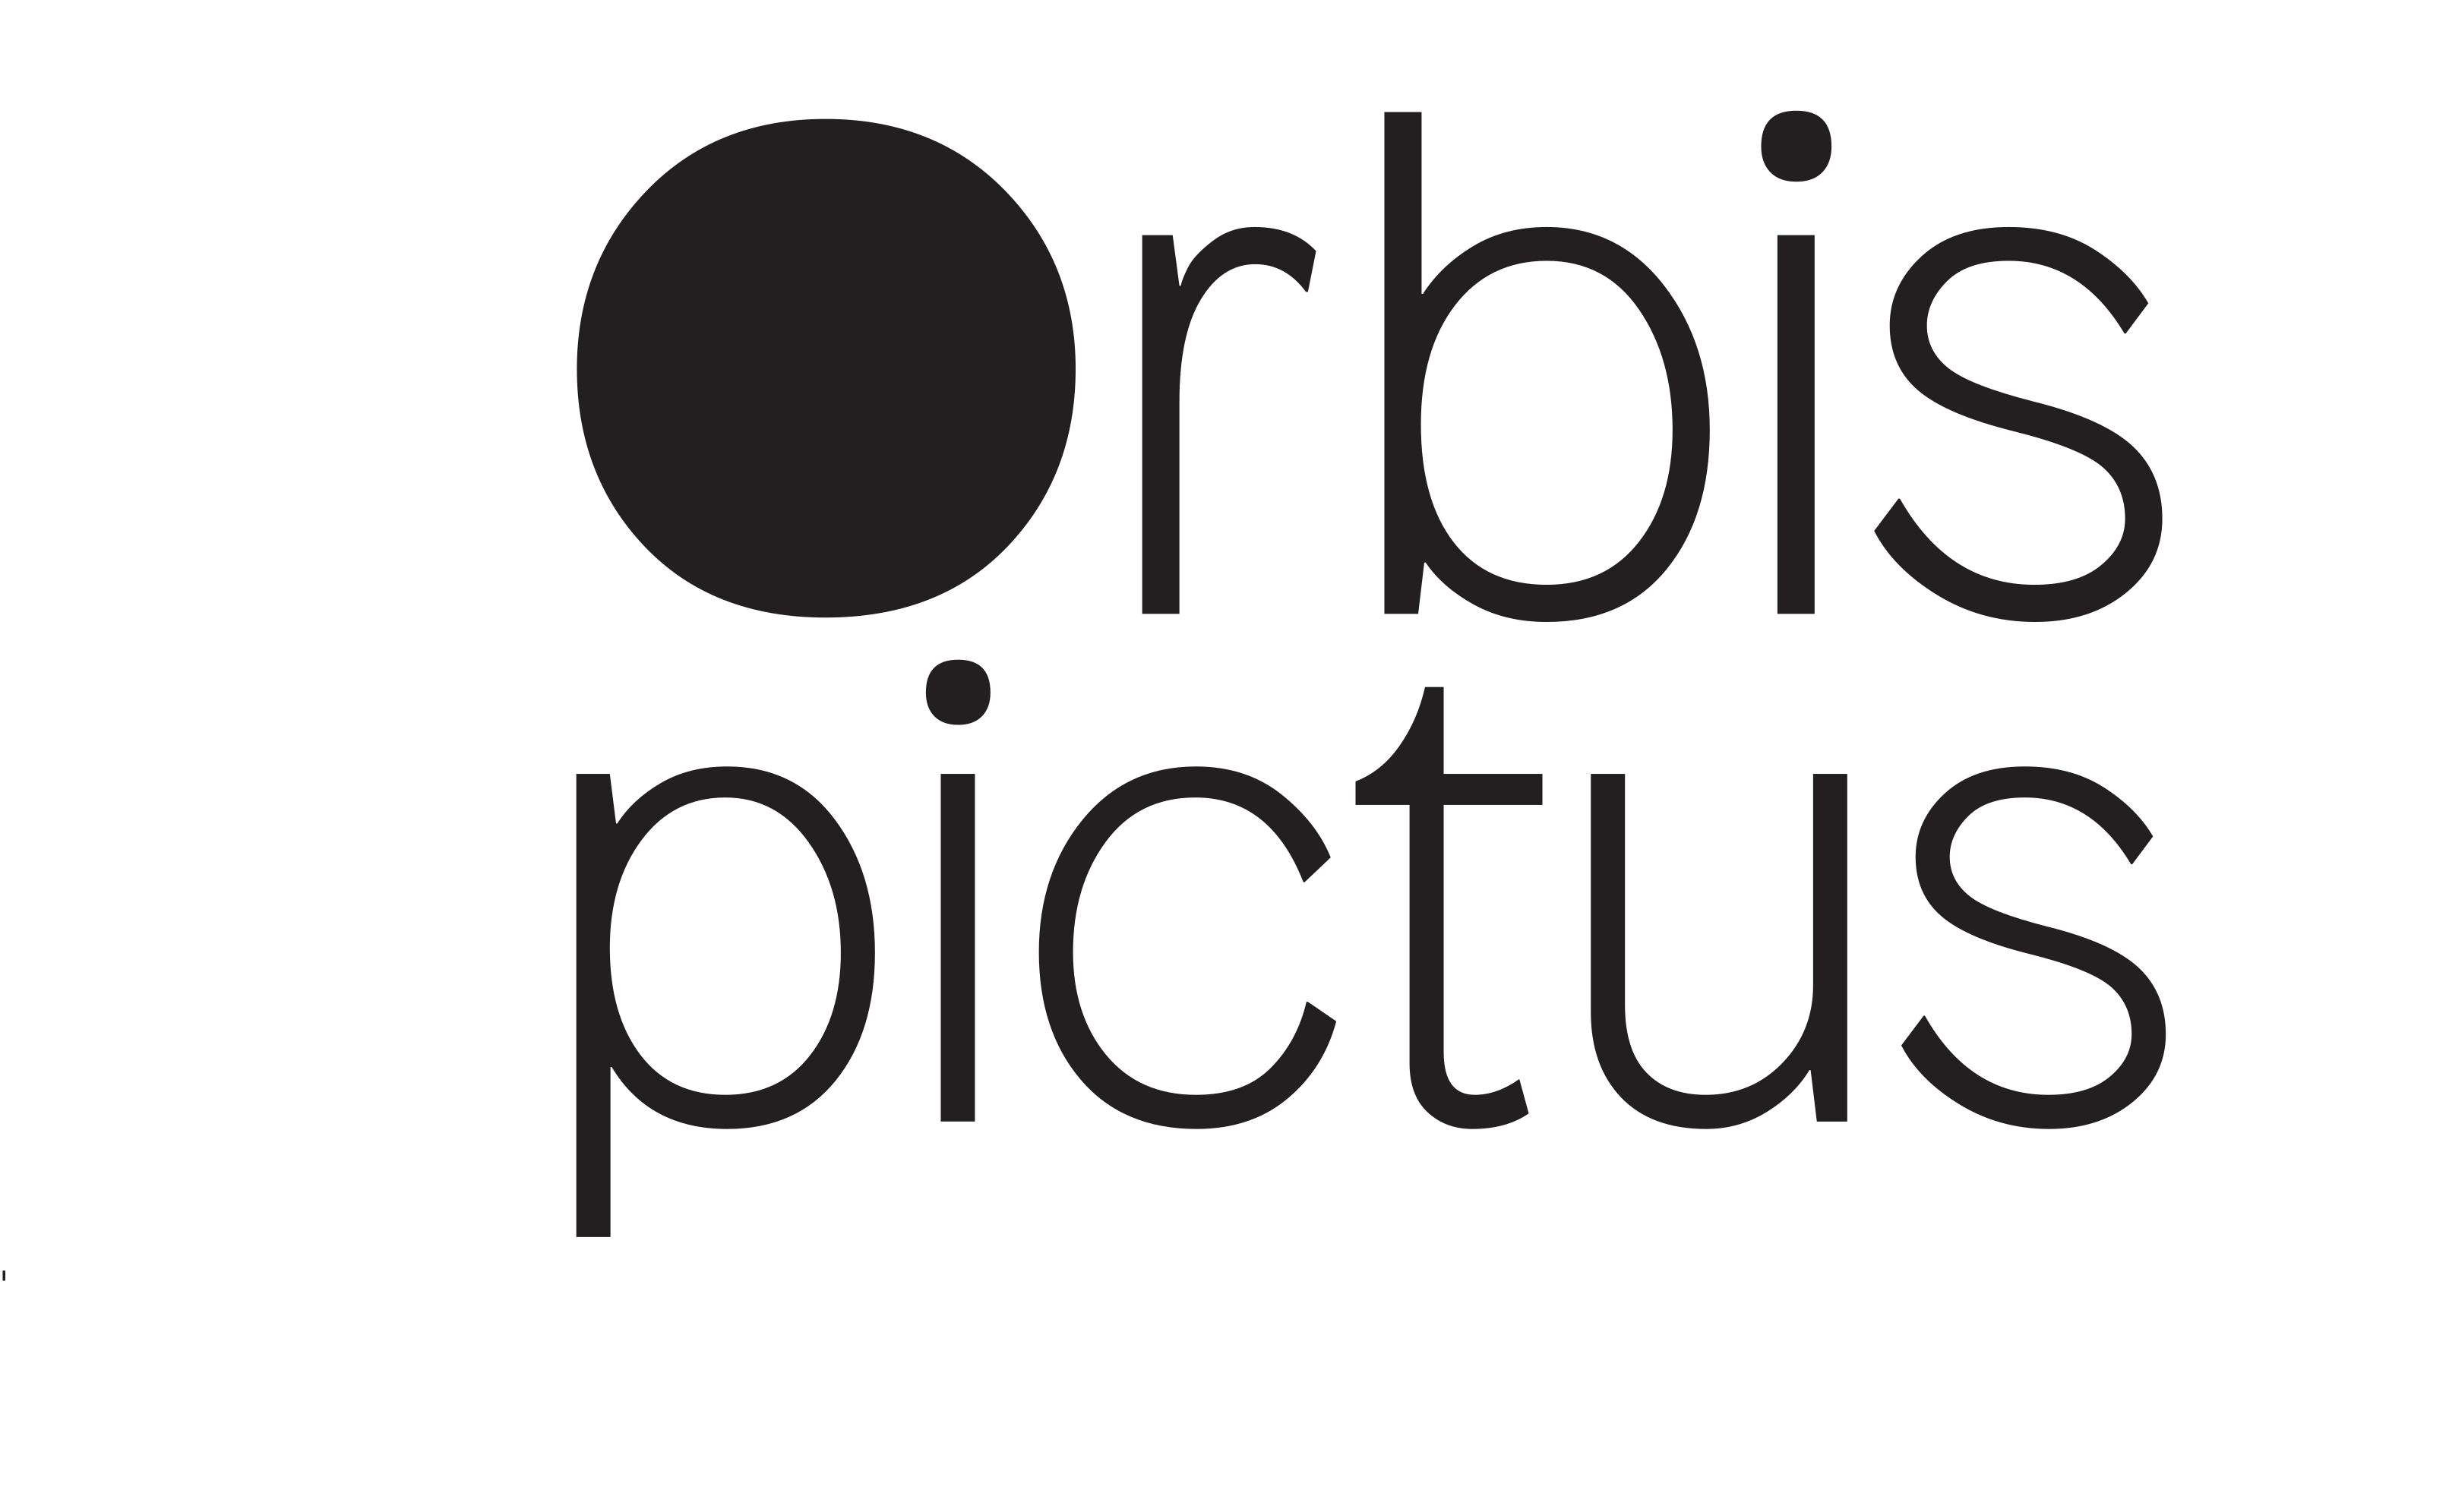 Orbis Pictus Galerie